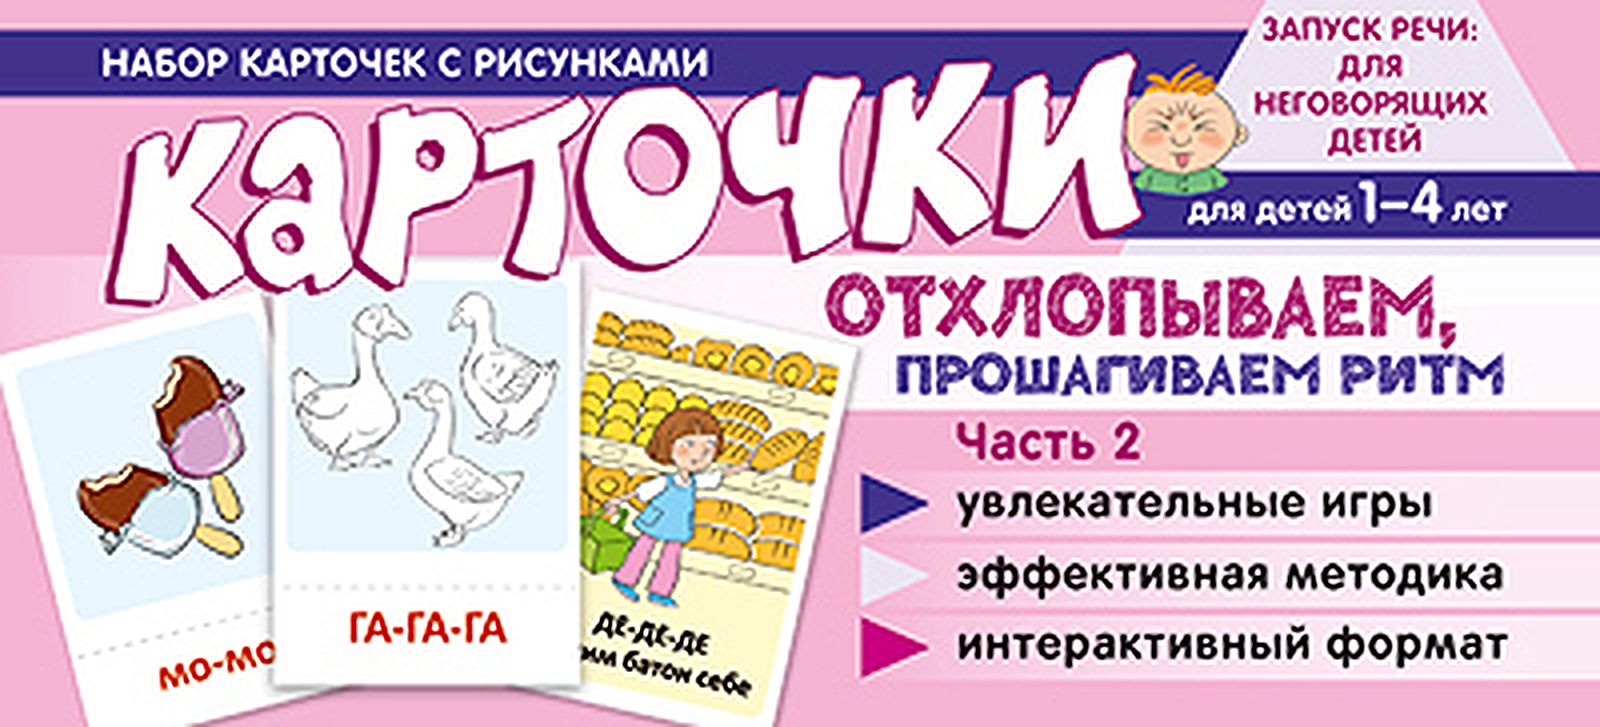 Обучающие карточки для детей Сфера ТЦ издательство Рисунки, Отхлопываем, прошагиваем ритм набор карточек с рисунками отхлопываем прошагиваем ритм часть 2 для детей от 1 года до 4 лет